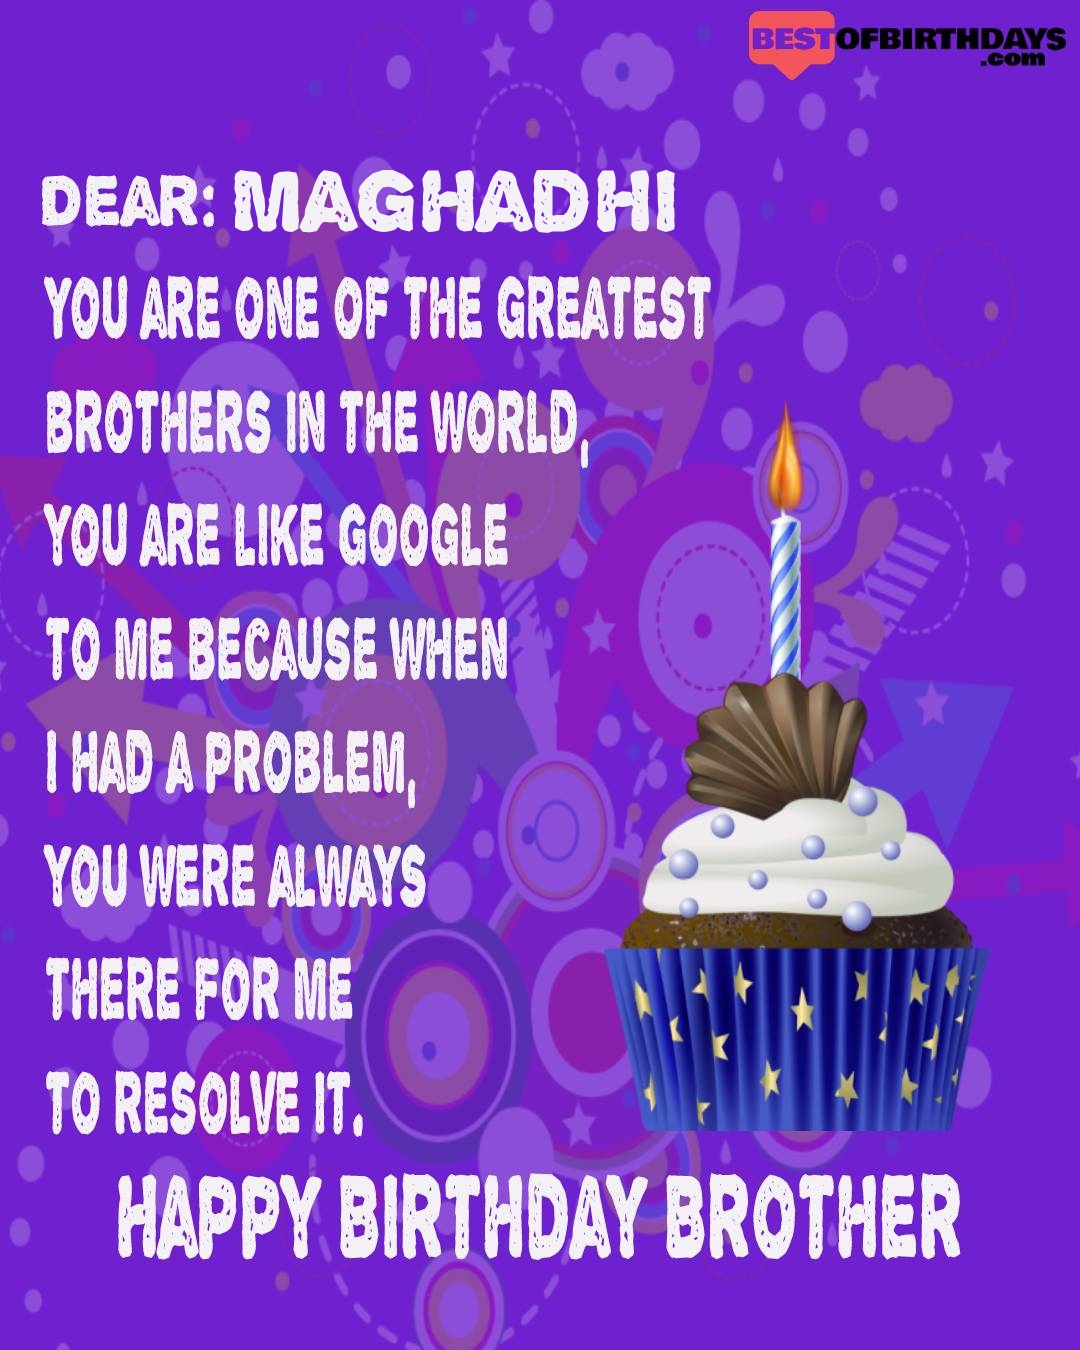 Happy birthday maghadhi bhai brother bro